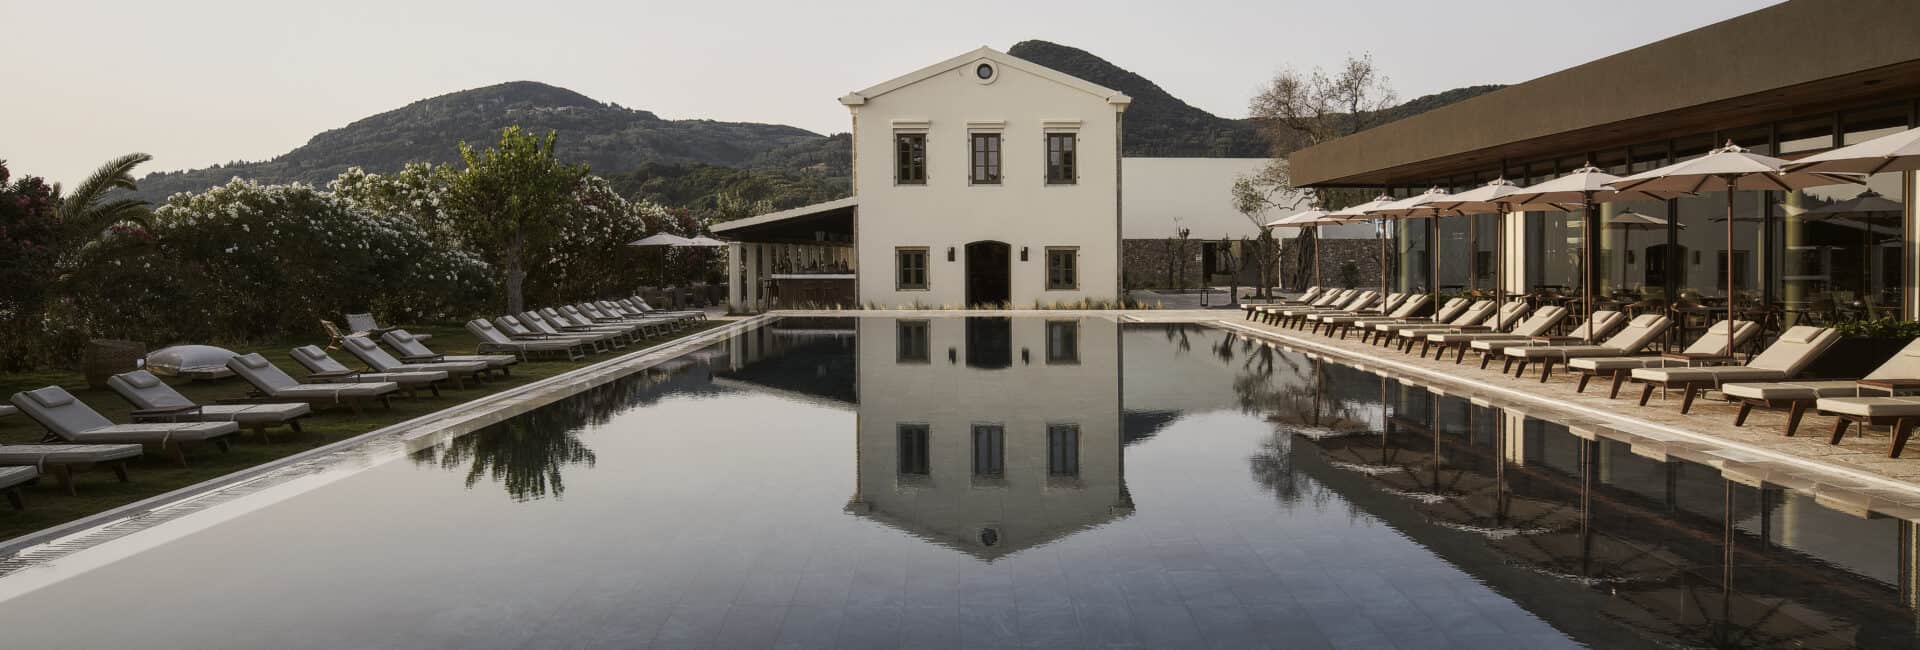 The Olivar Suites - Pool